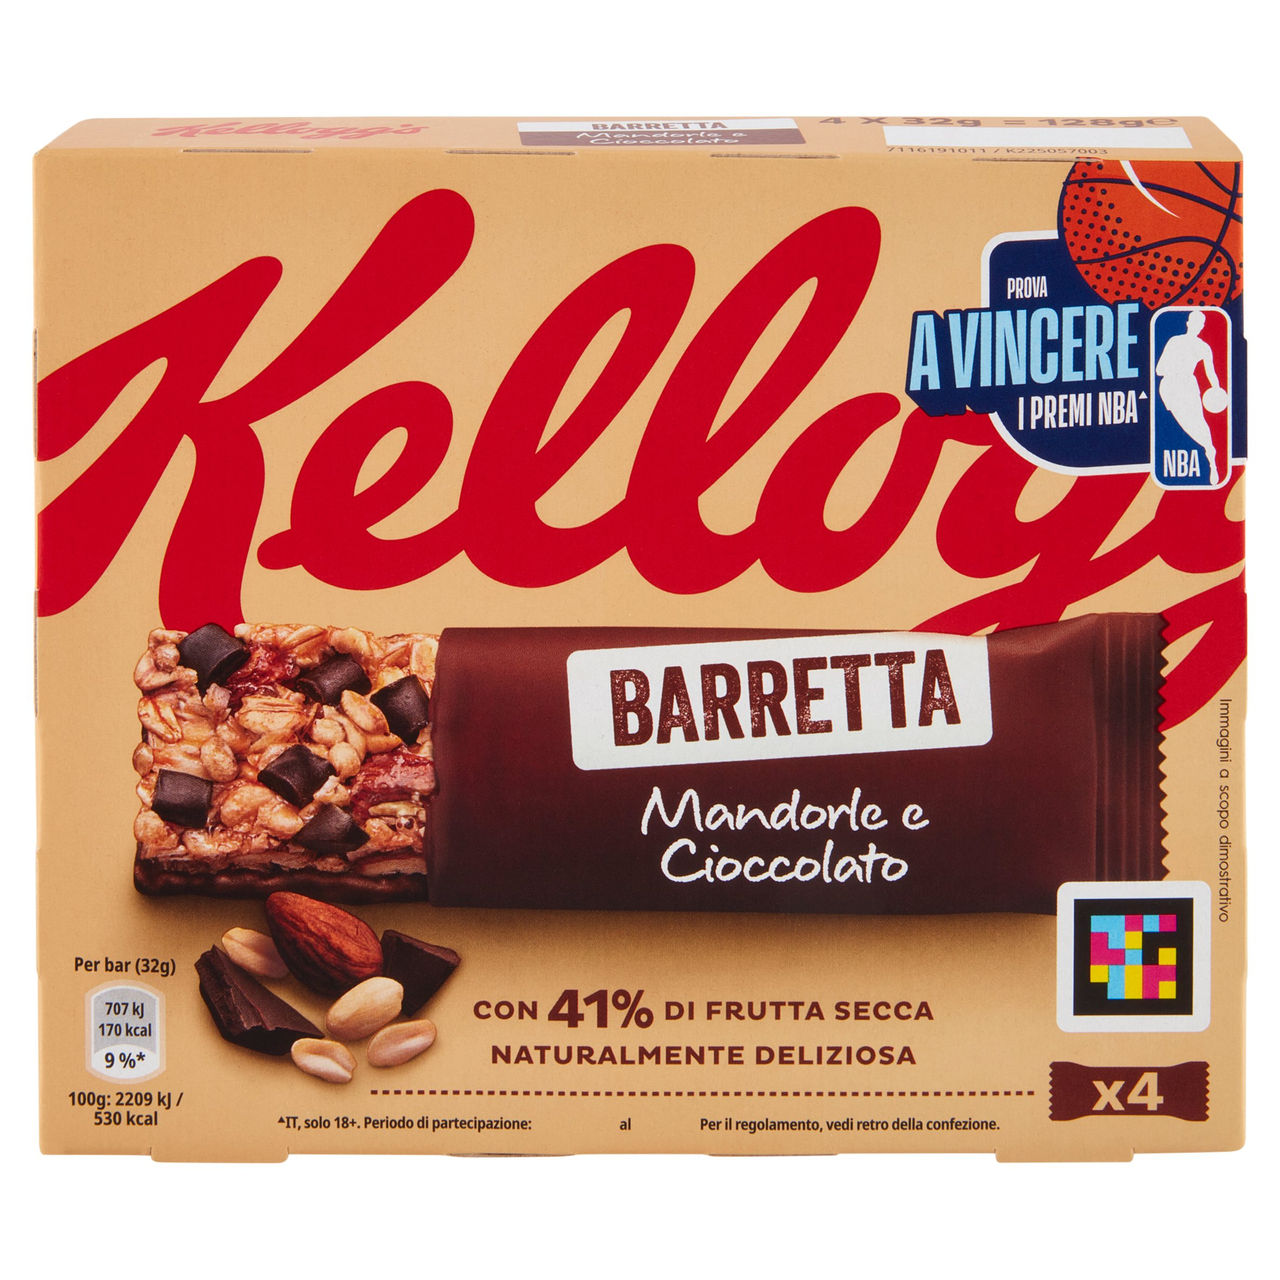 Kellogg's Barretta Mandorle e Cioccolato 4 x 32 g